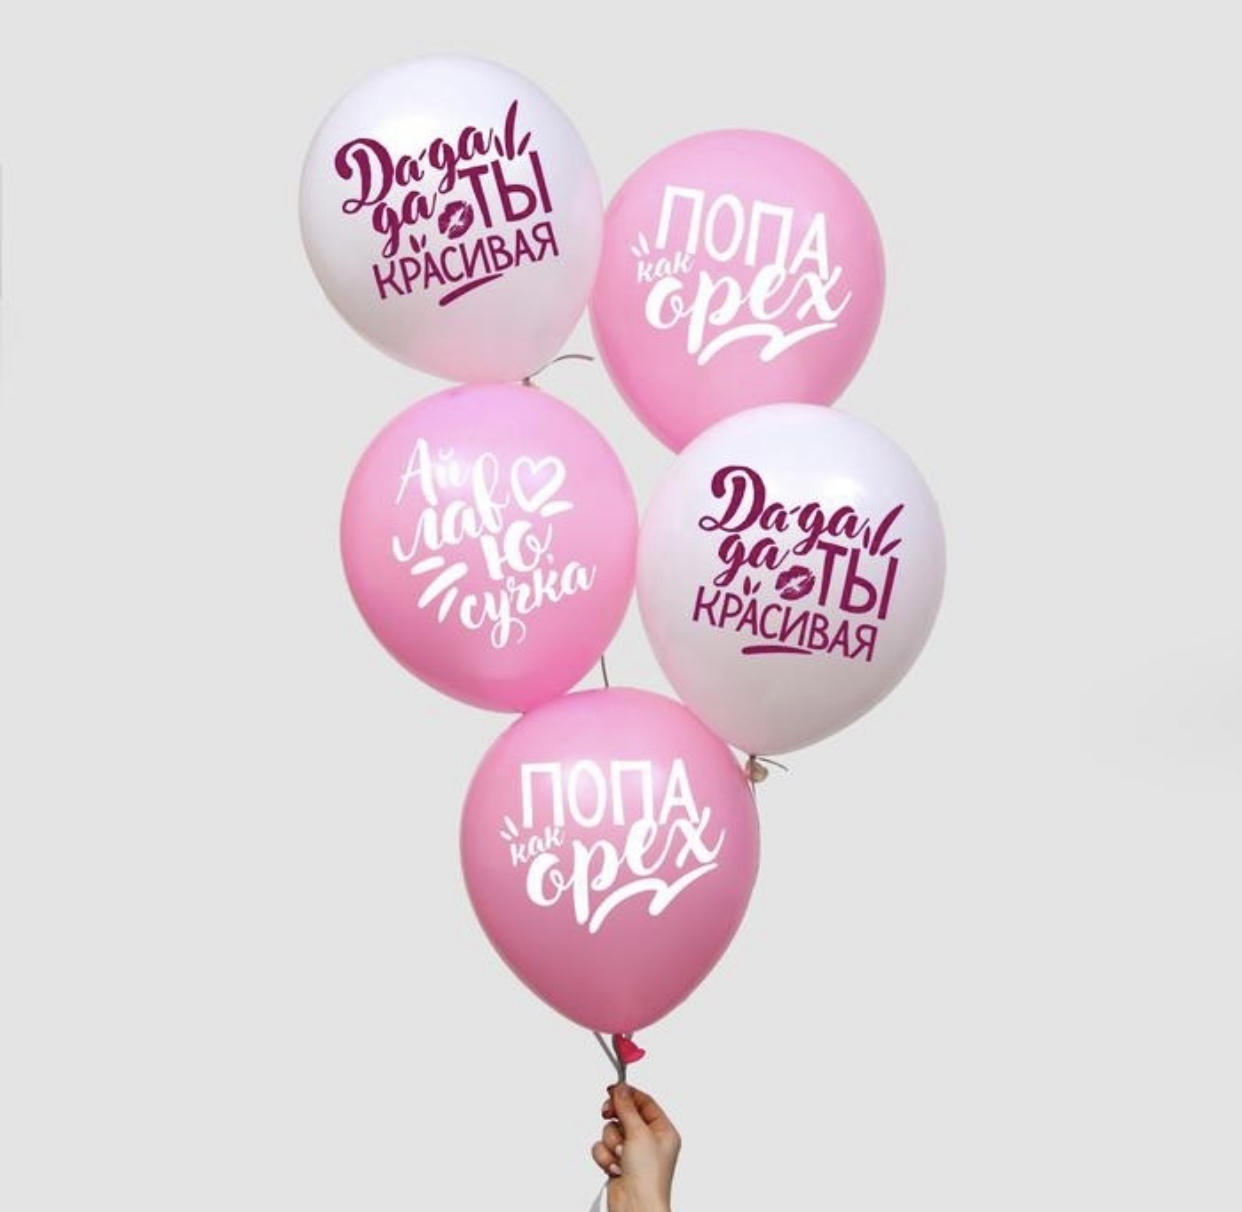 Печать логотипов на латексных воздушных шарах